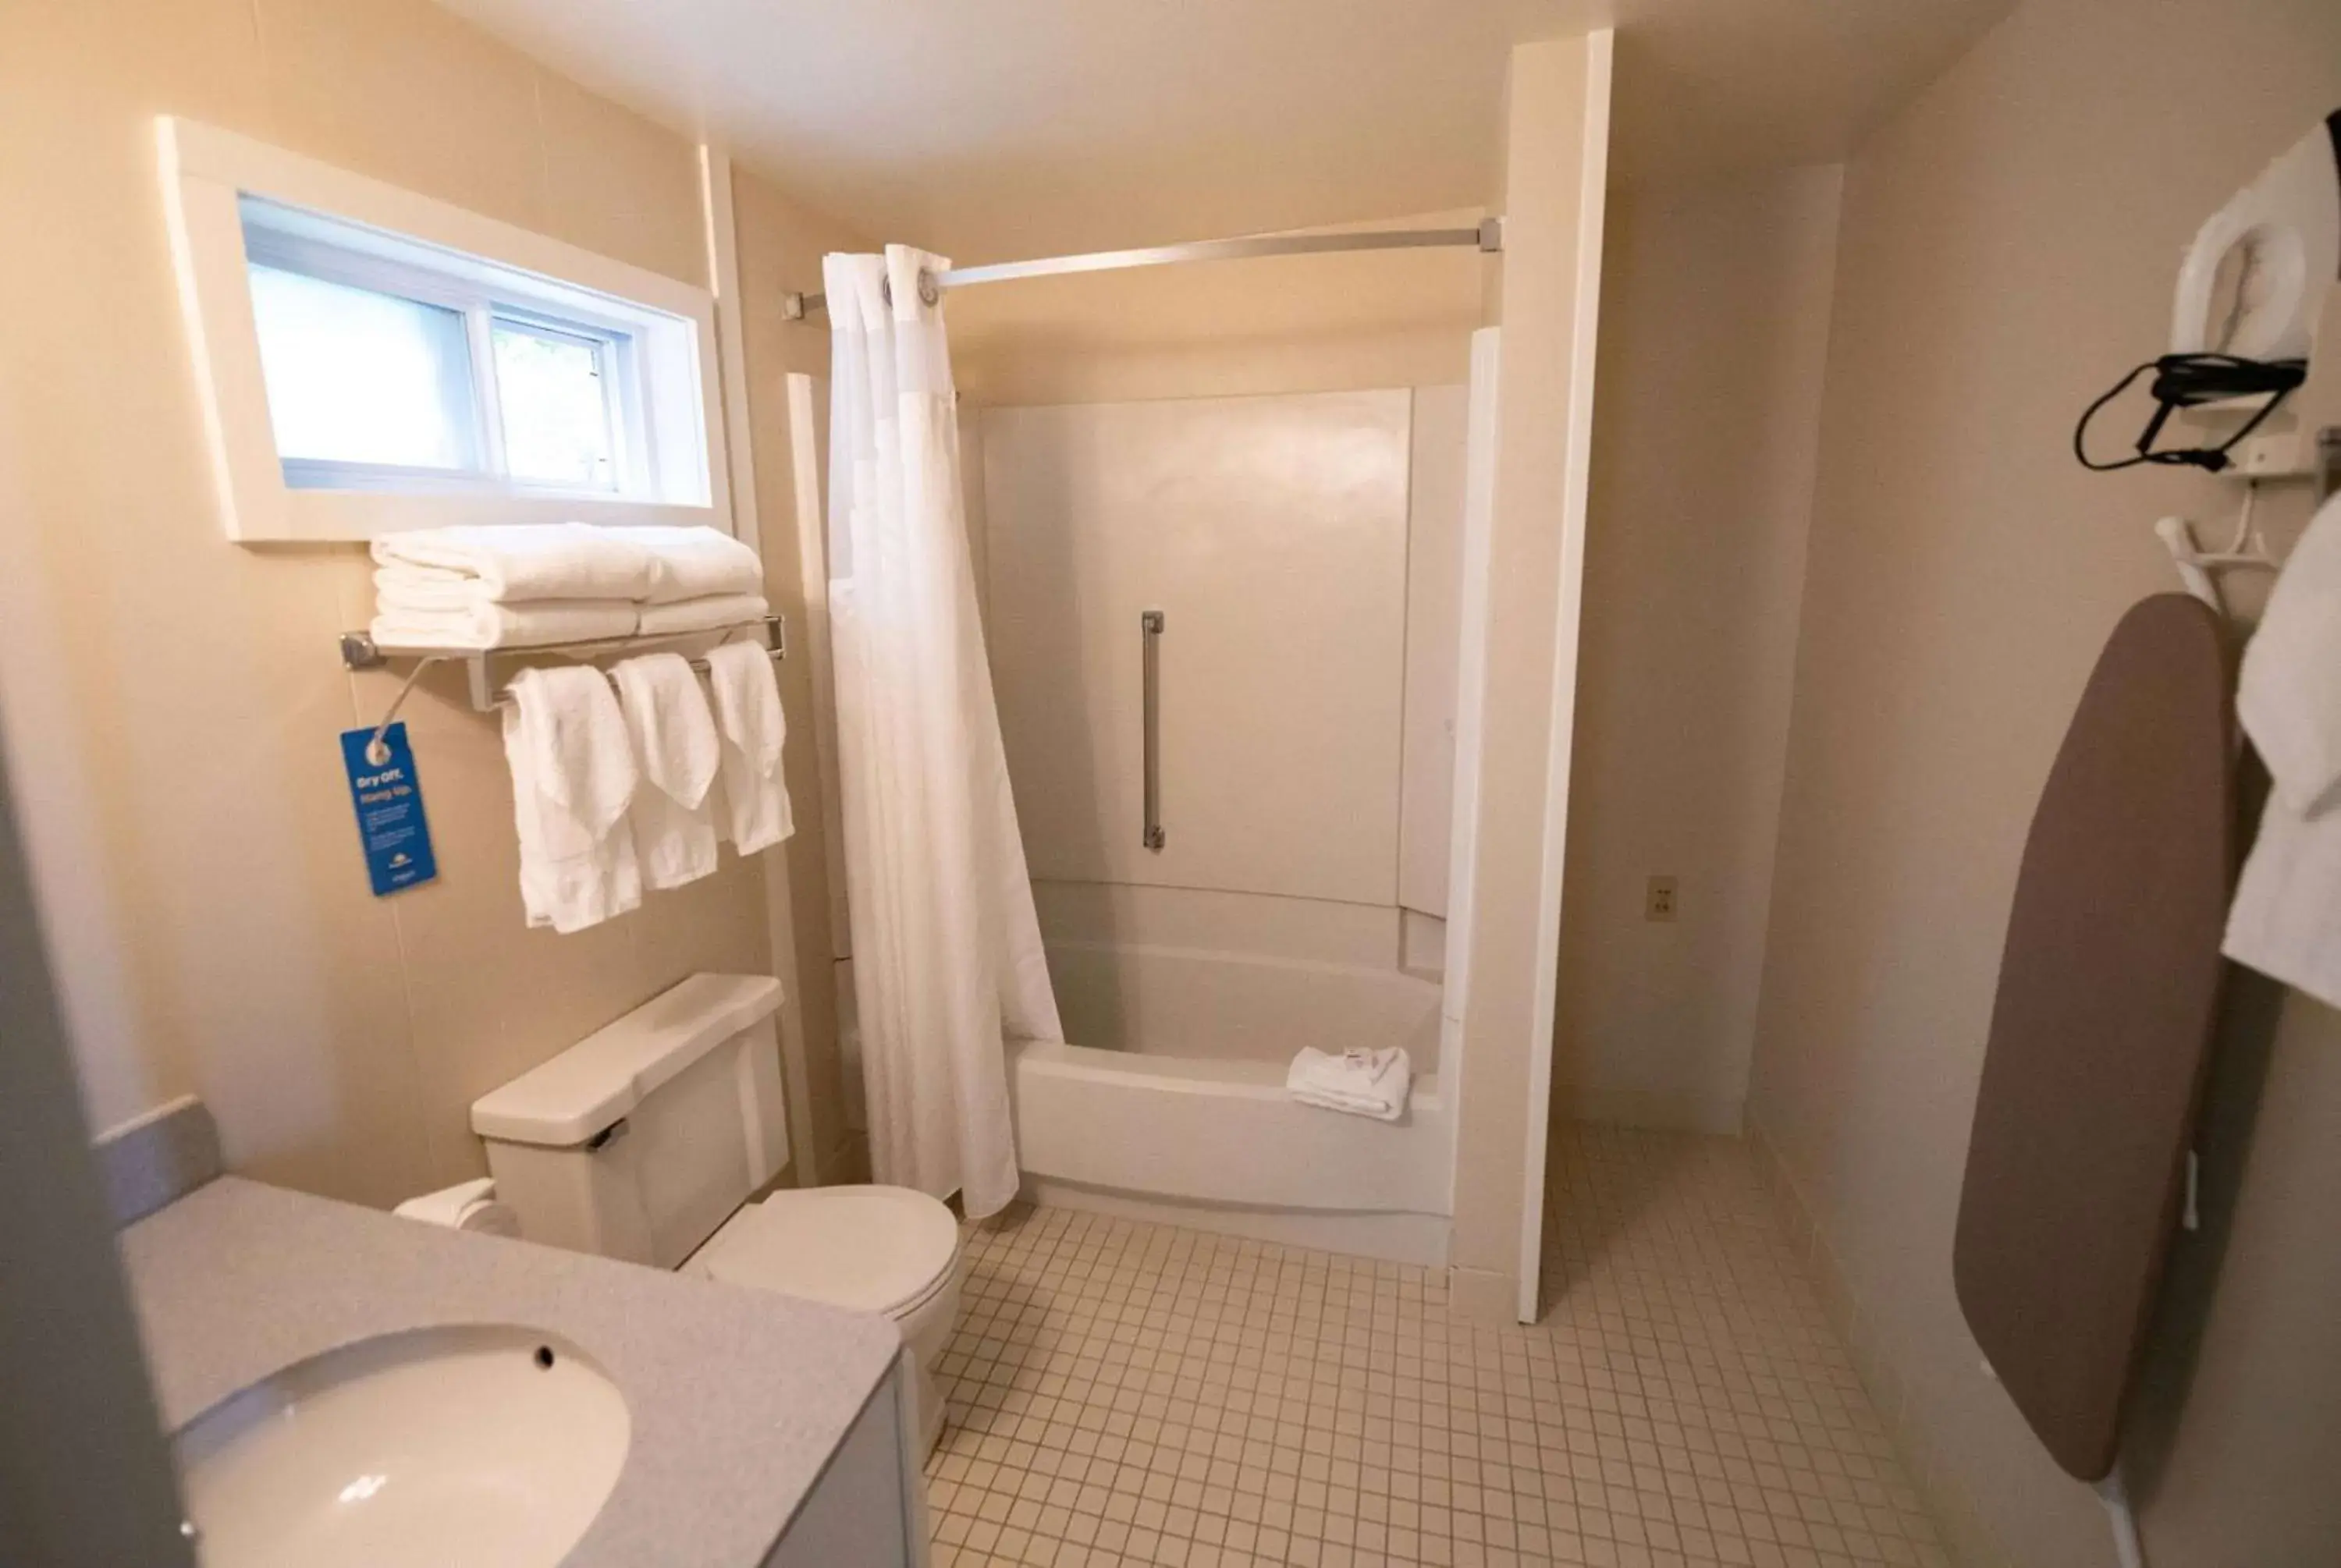 TV and multimedia, Bathroom in Days Inn by Wyndham Bar Harbor